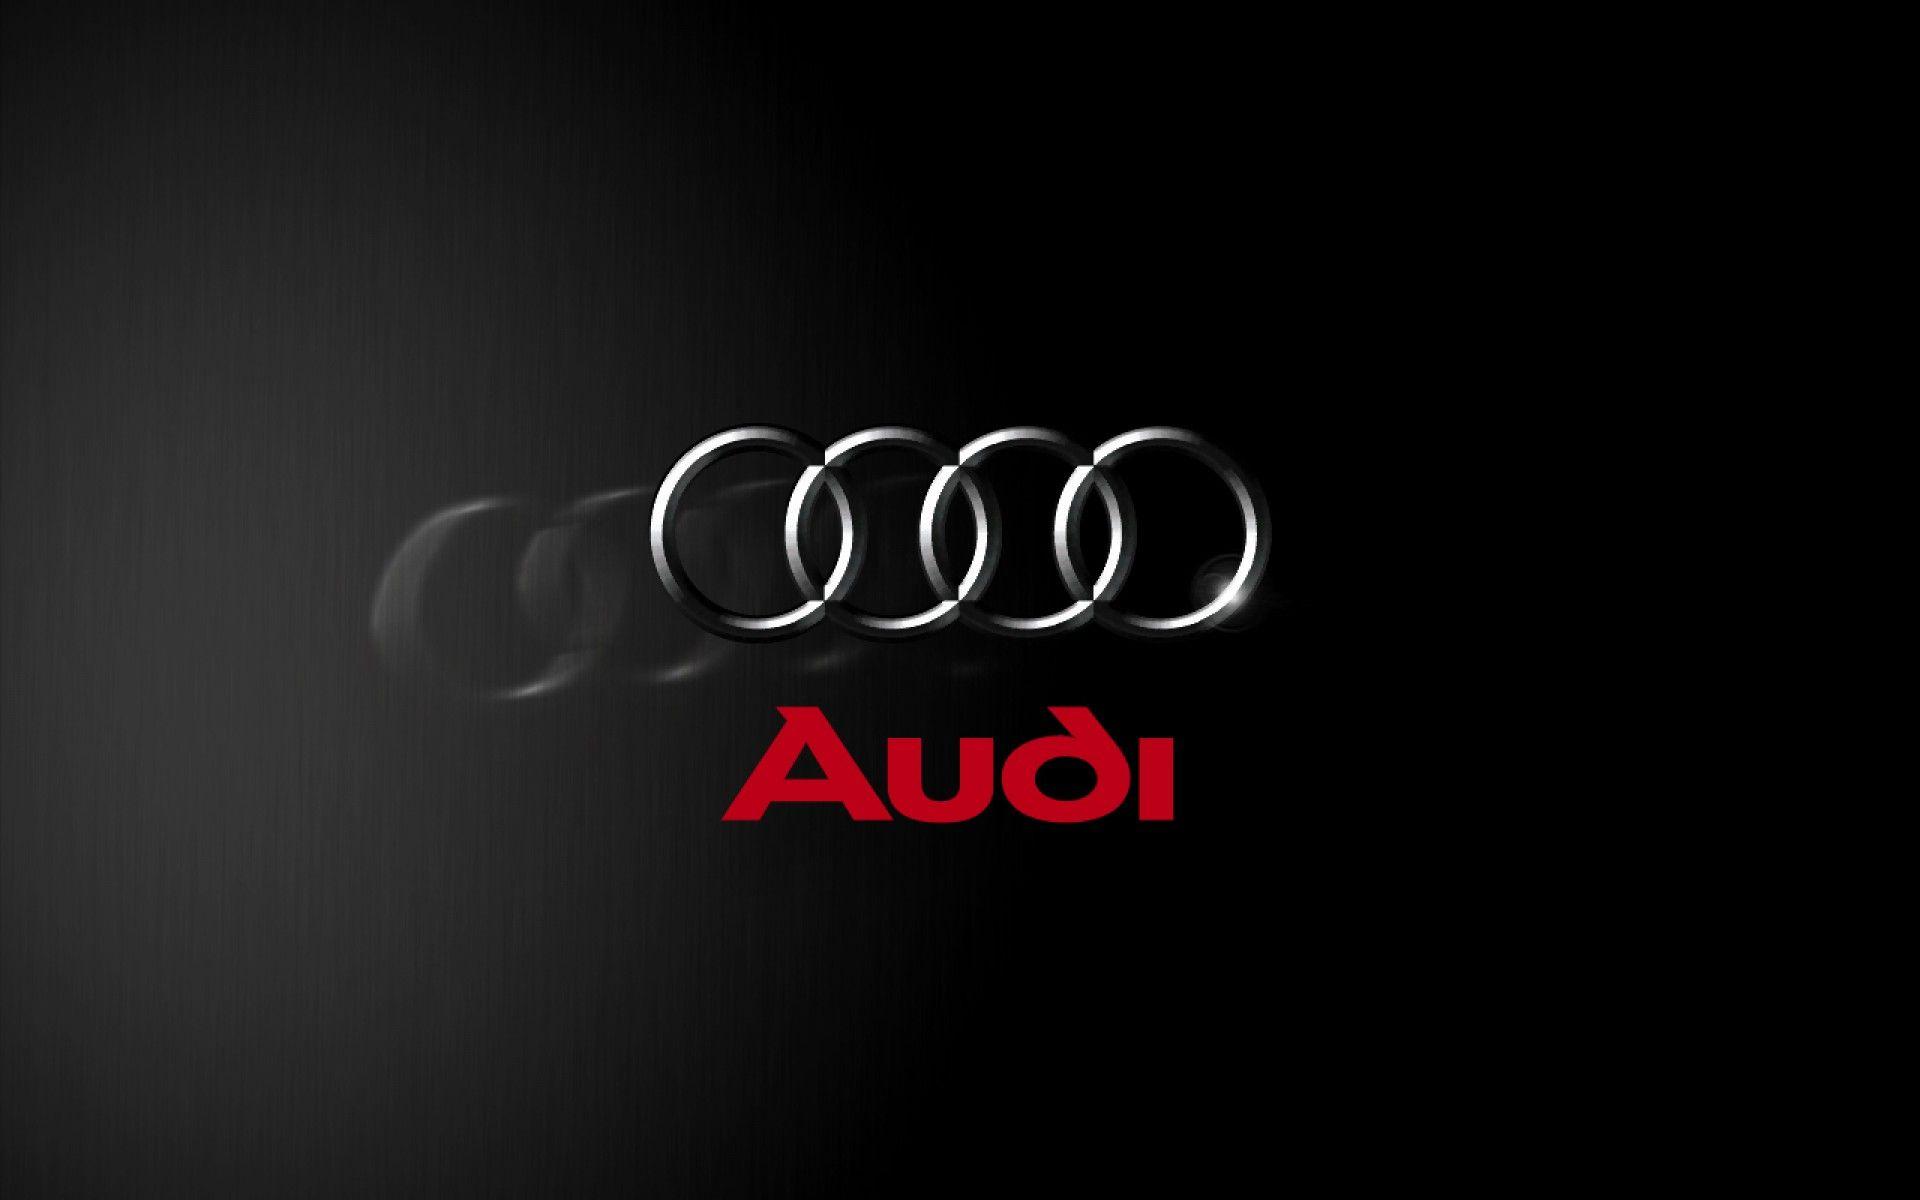 Audi logo HD wallpapers  Pxfuel